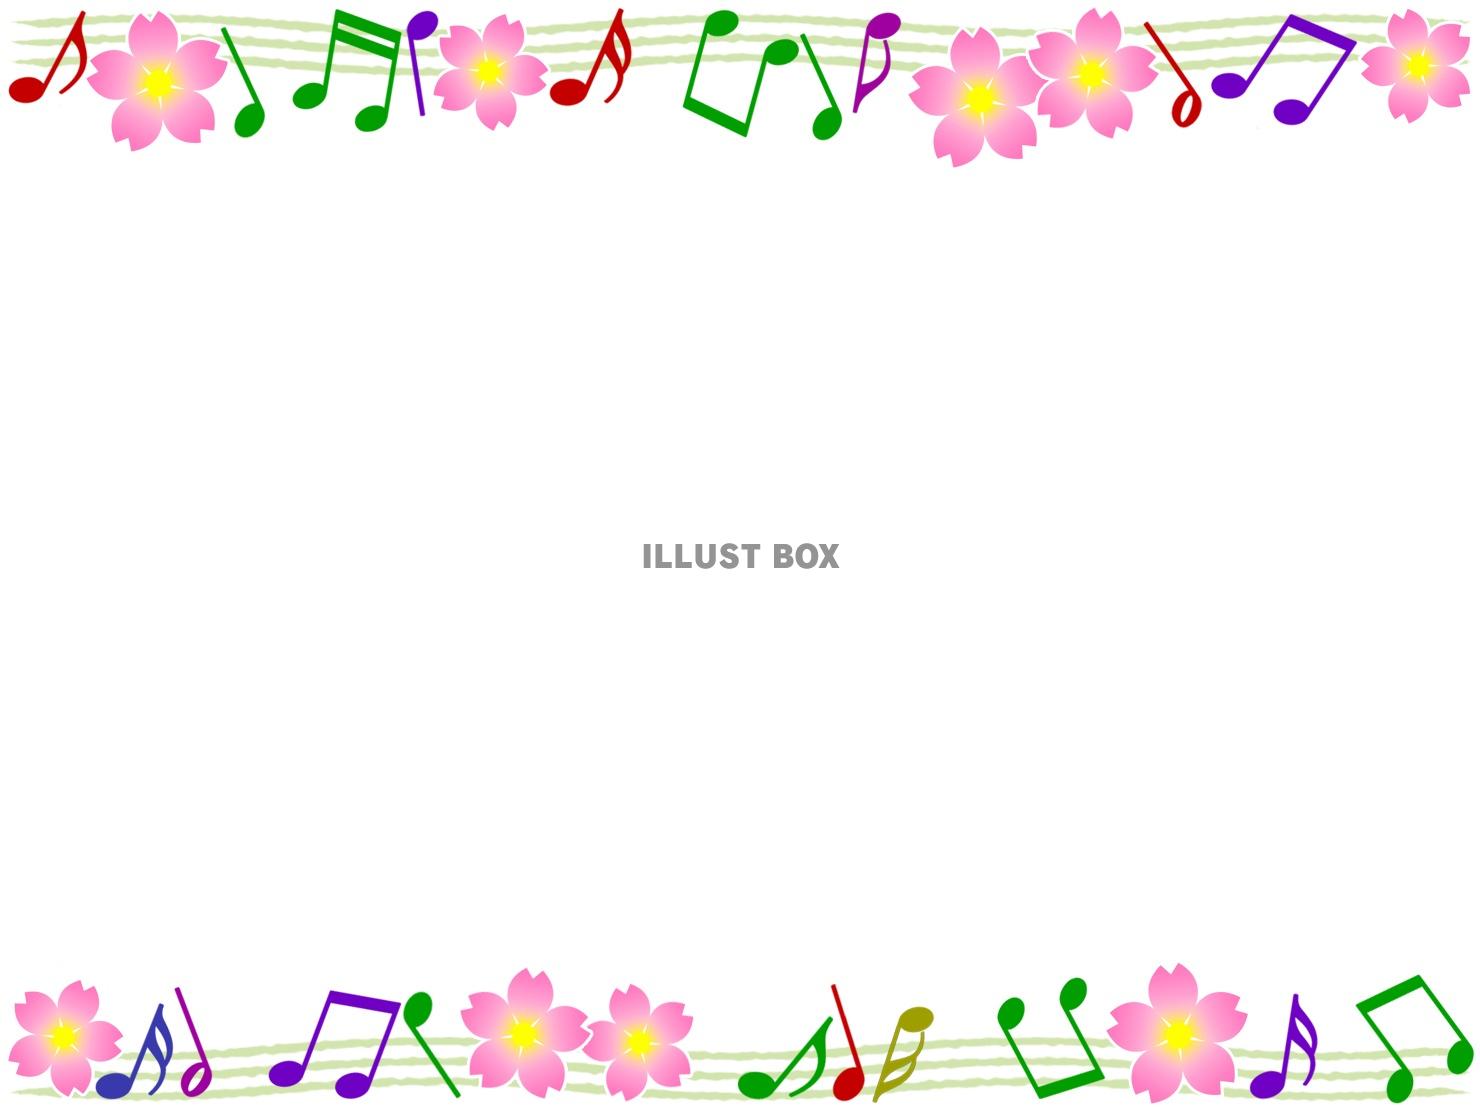 無料イラスト 音符と桜の花模様の音楽フレーム飾り枠